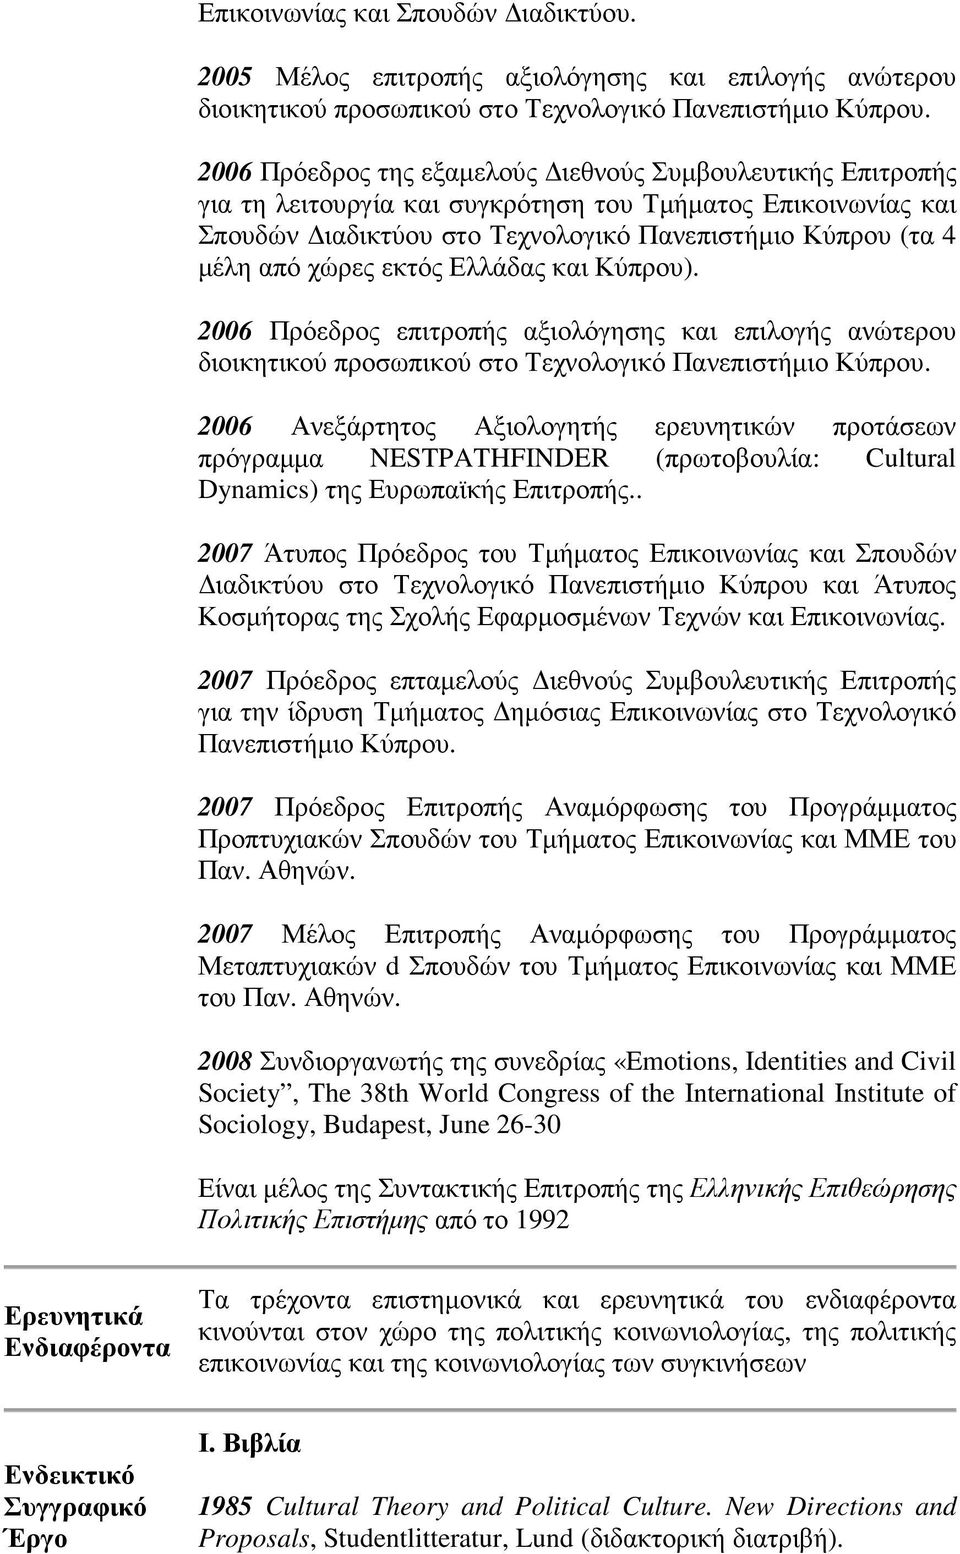 εκτός Ελλάδας και Κύπρου). 2006 Πρόεδρος επιτροπής αξιολόγησης και επιλογής ανώτερου διοικητικού προσωπικού στο Τεχνολογικό Πανεπιστήµιο Κύπρου.